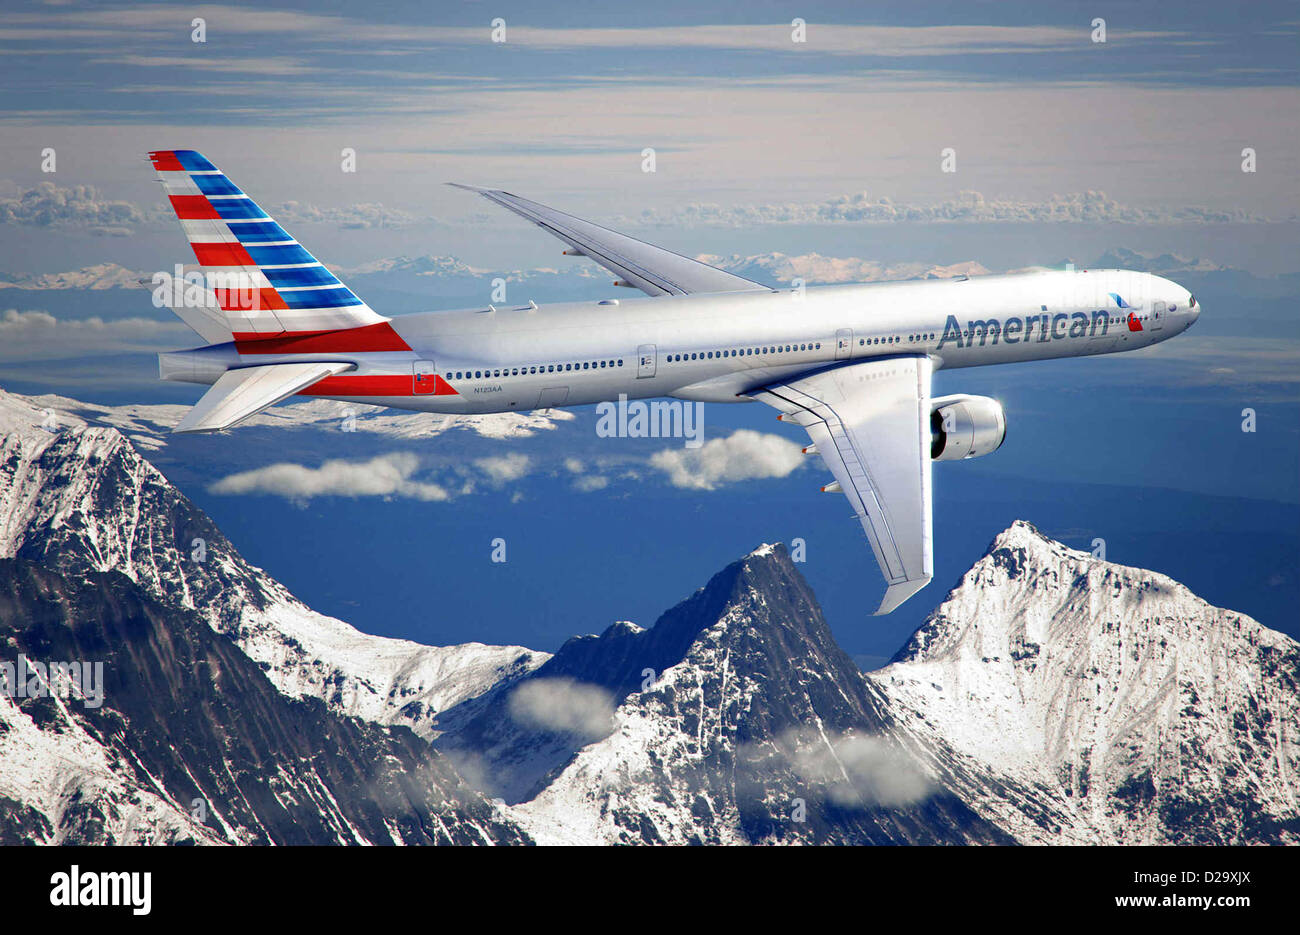 American Airlines inauguró un nuevo logo y livery que bendecirán la empresa nuevos aviones Boeing 777-300ER como parte de un esfuerzo por revitalizar la marca el 17 de enero de 2013 en Fort Worth, TX. Foto de stock